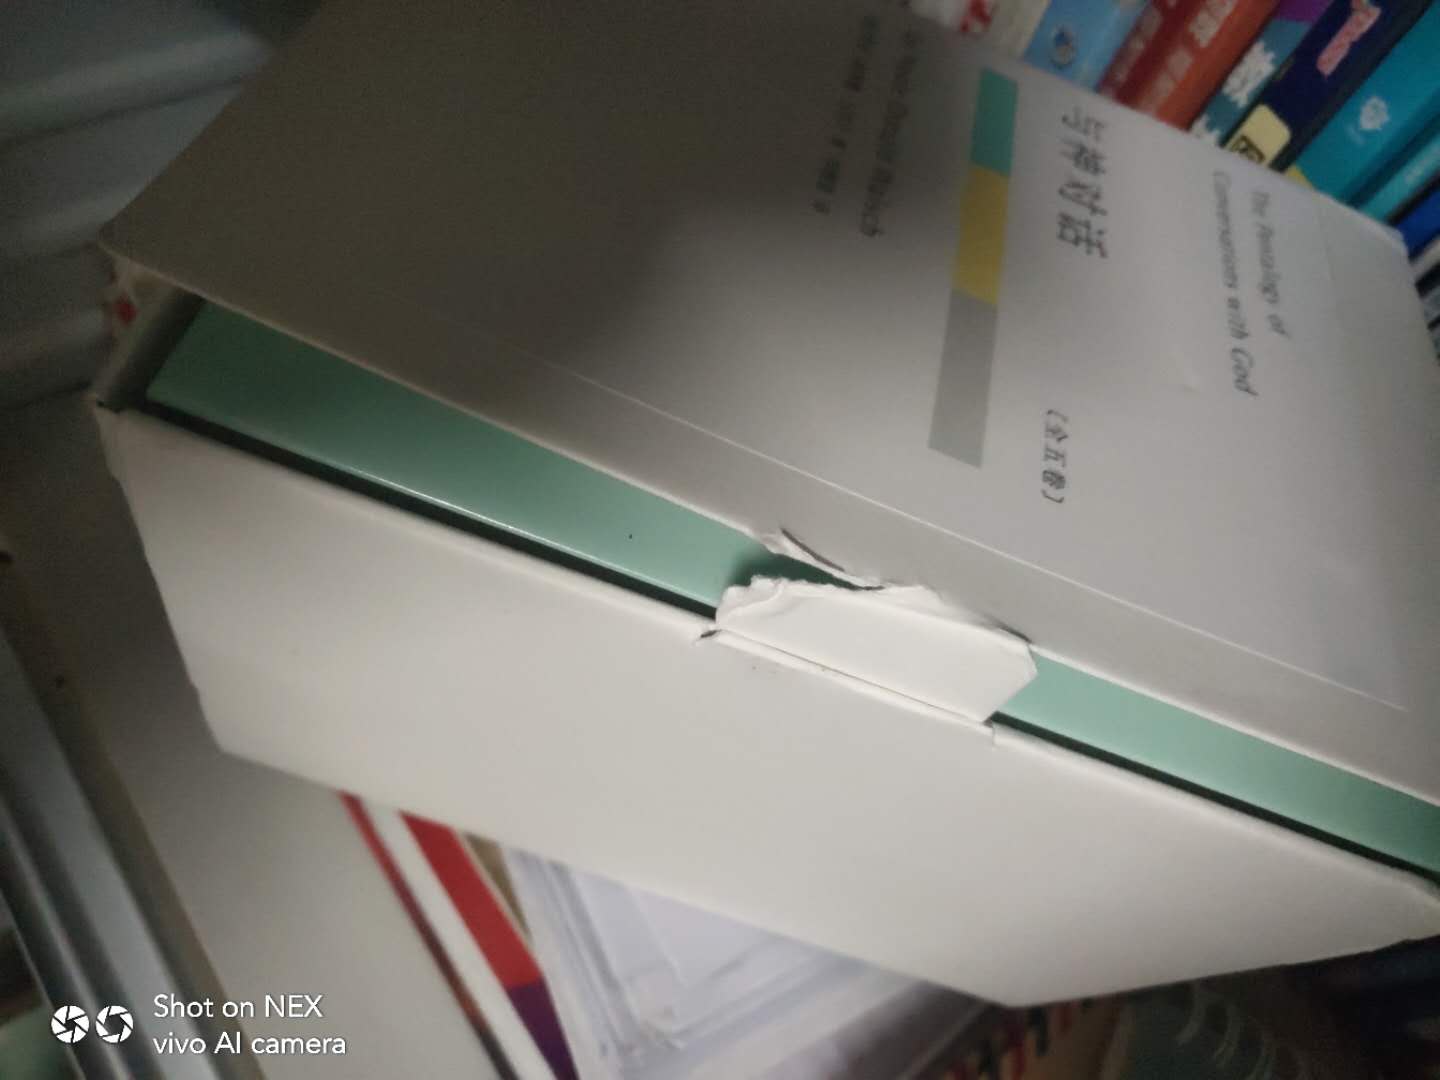 包装有破损，盒子开口处直接烂了，第一本书书角挤压变形挤压。 要送人的，都不好意思送出去了，差评！